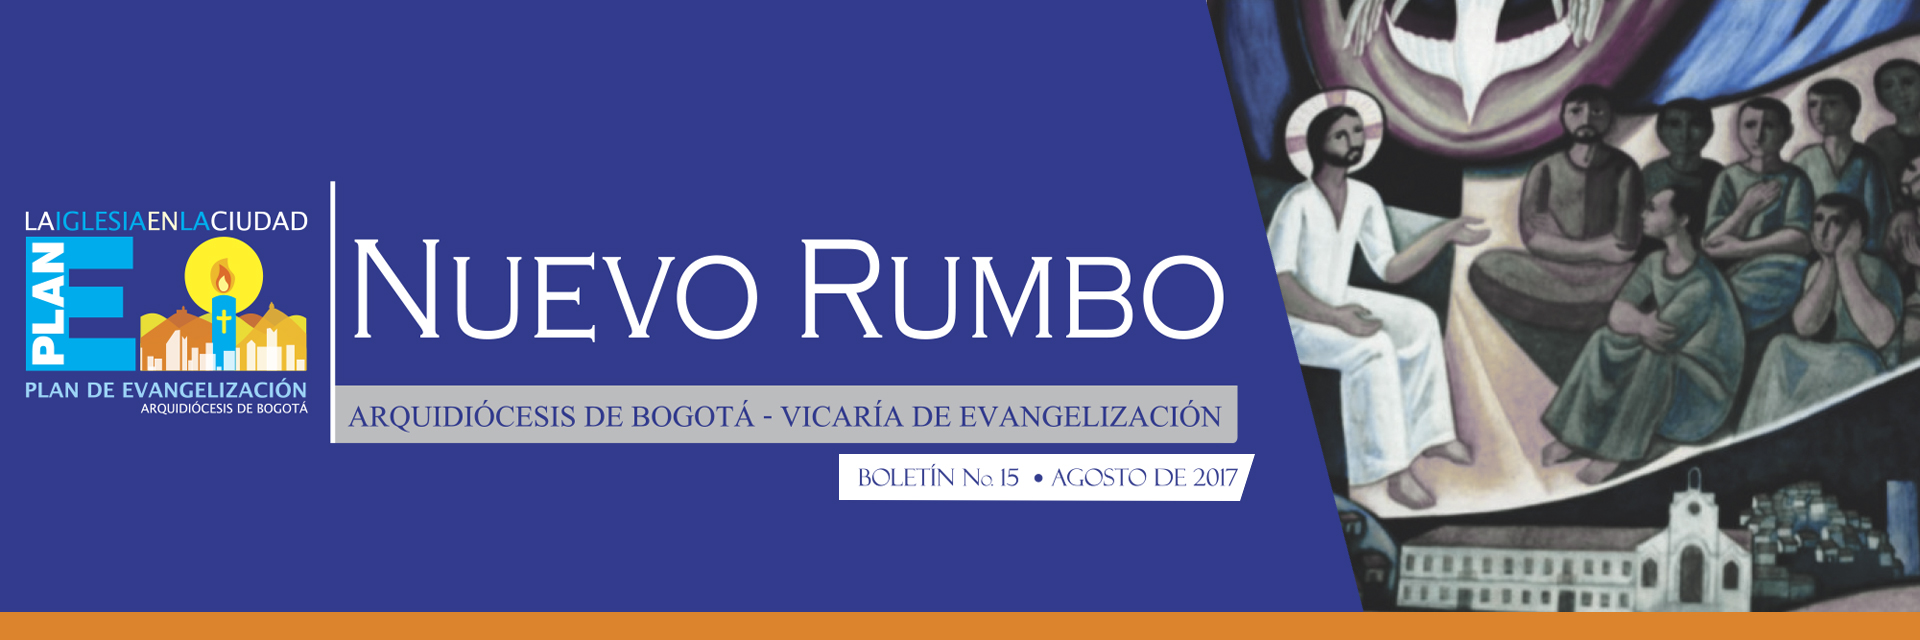 Boletín "El Nuevo Rumbo" No.15 - agosto de 2017